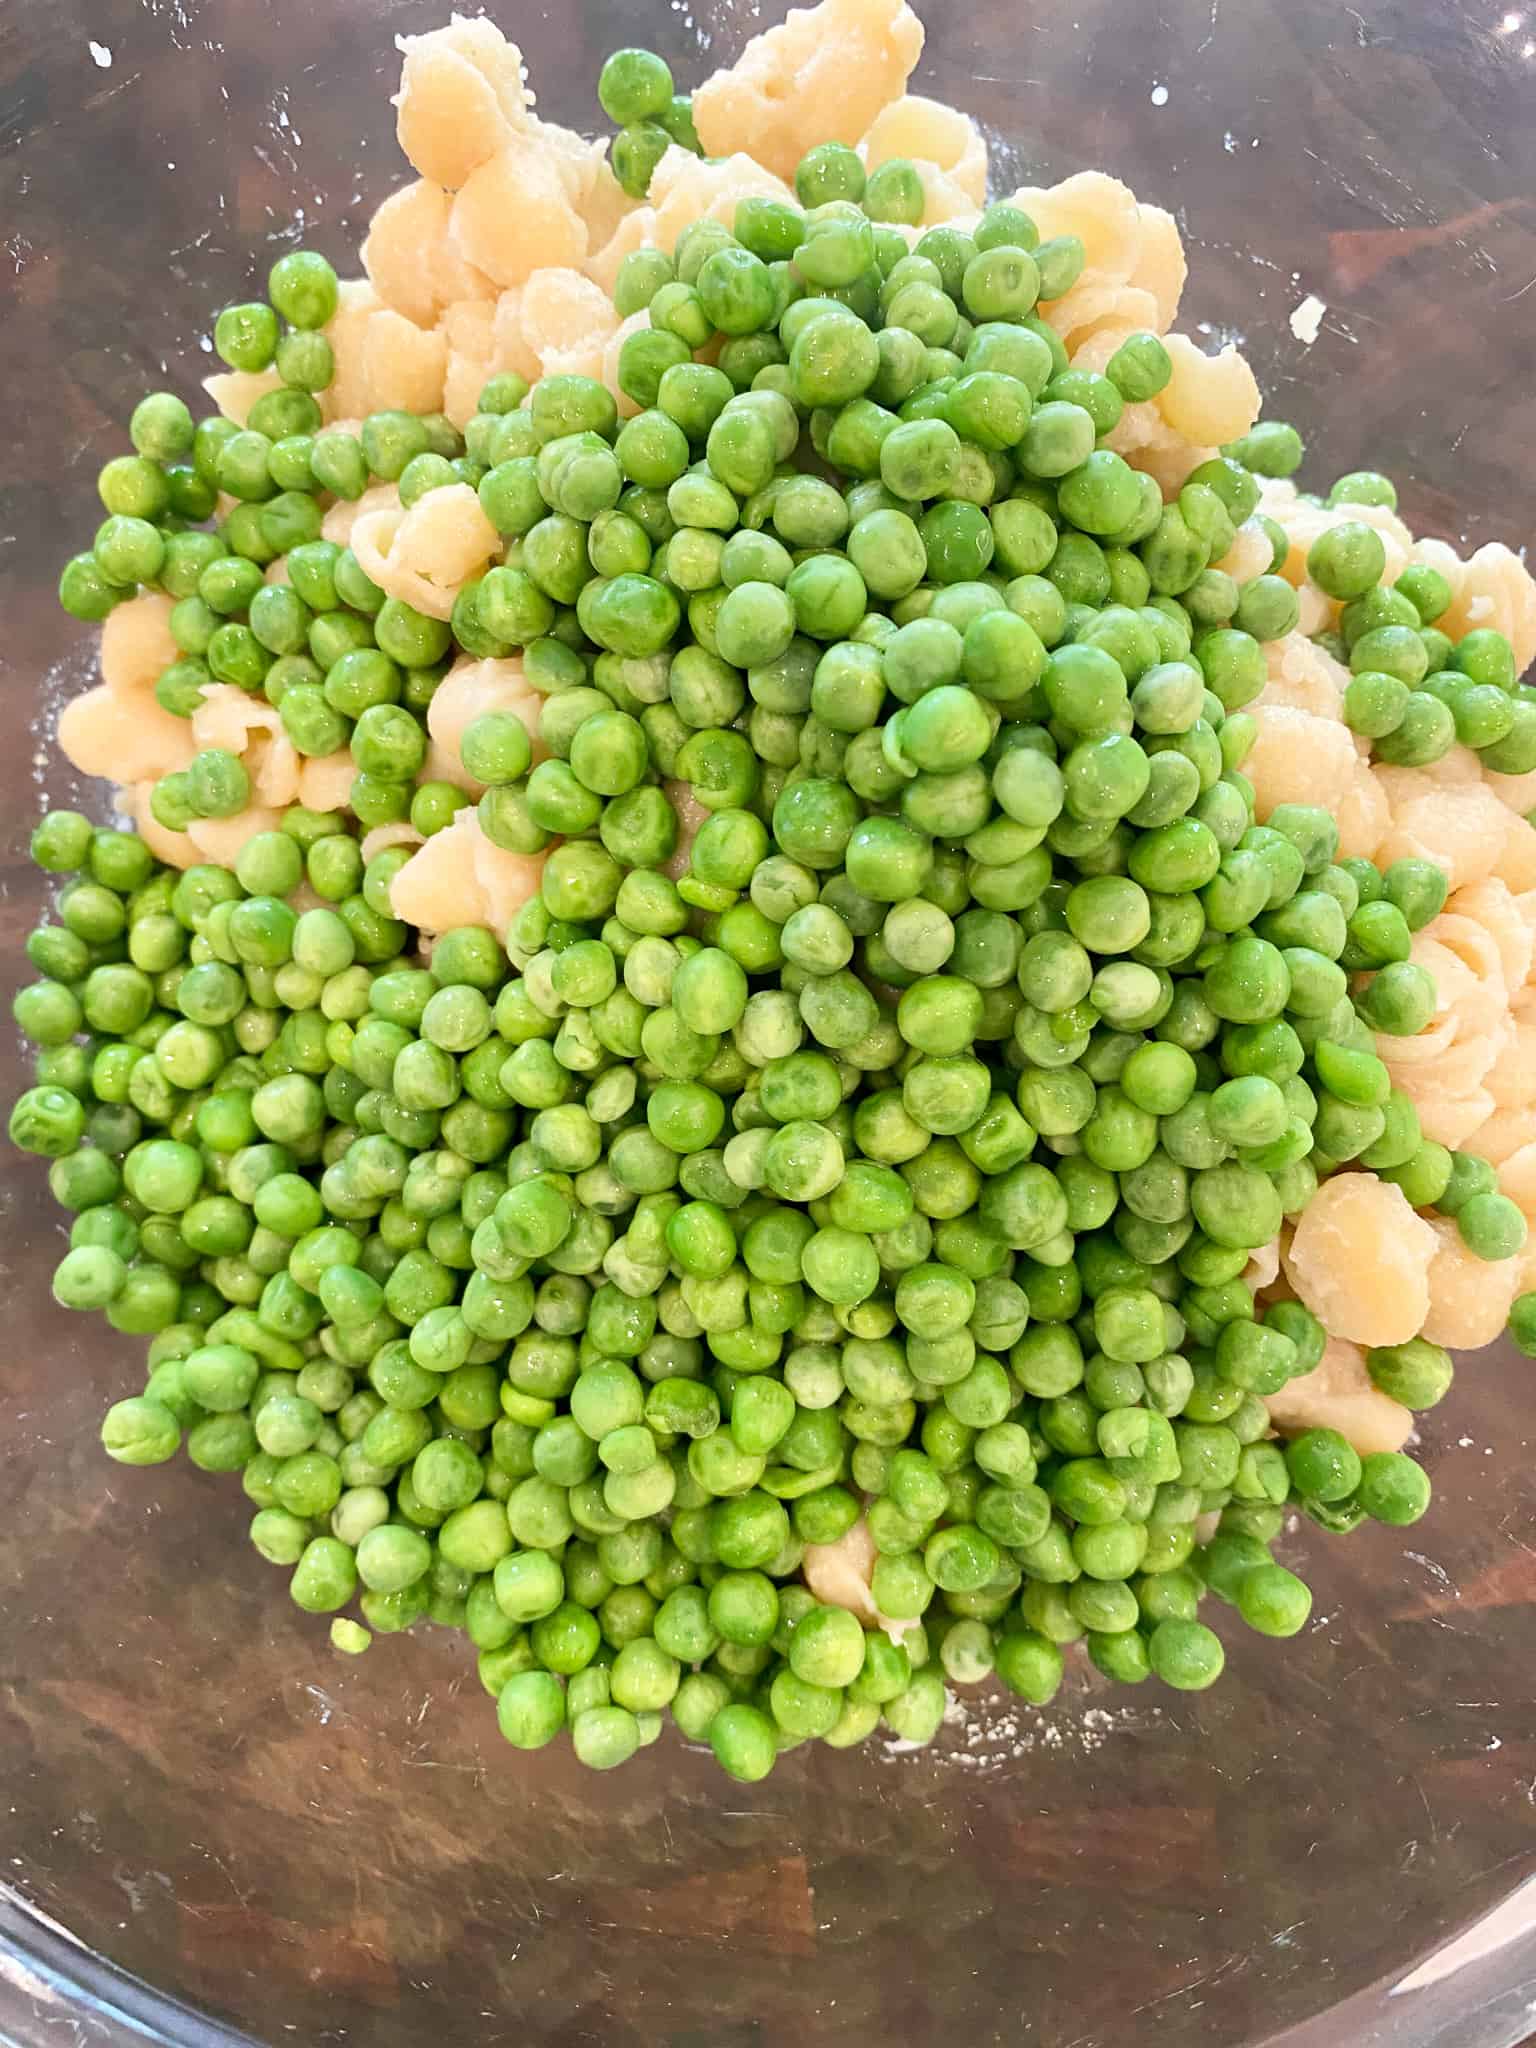 add thawed green peas